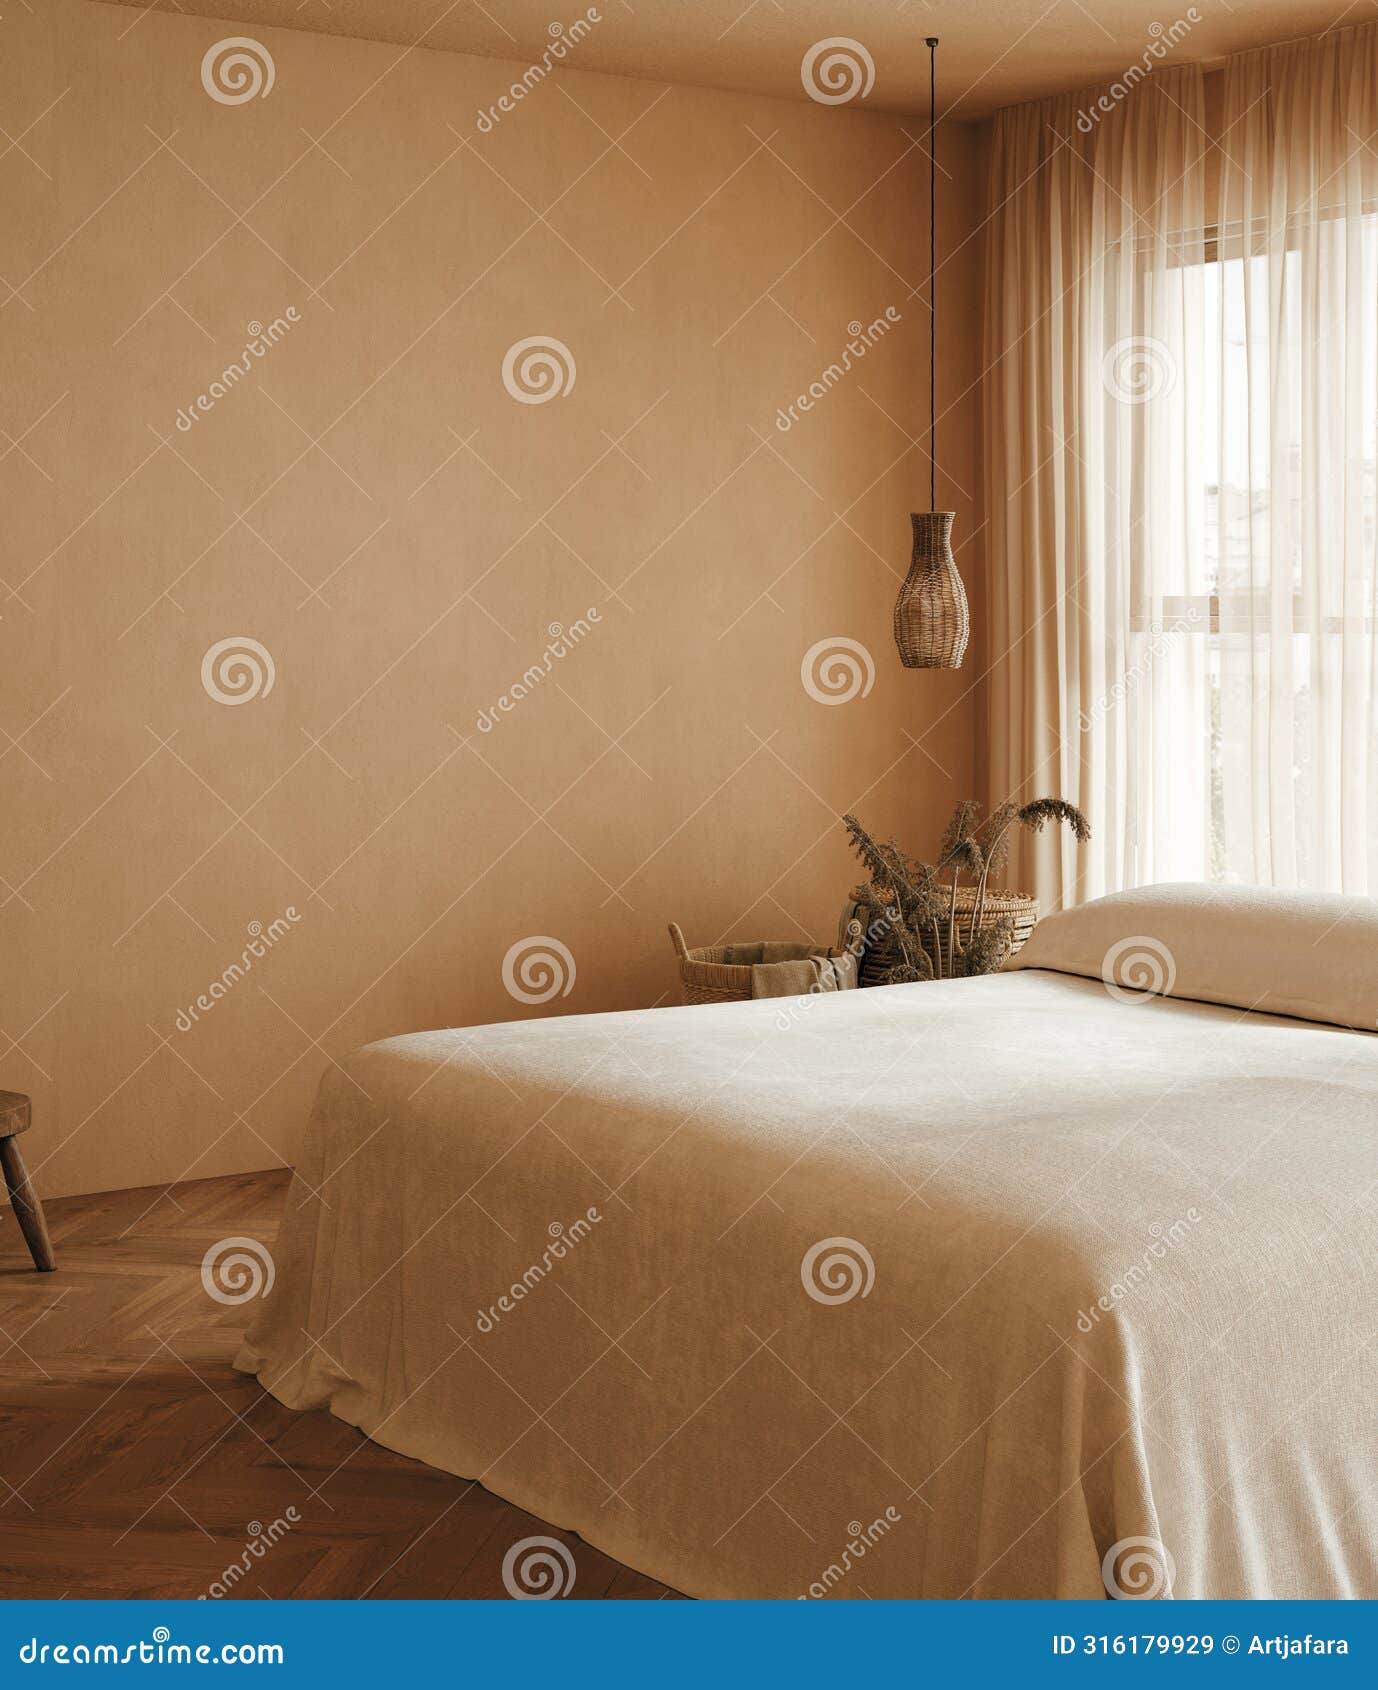 cozy beige japandi bedroom interior